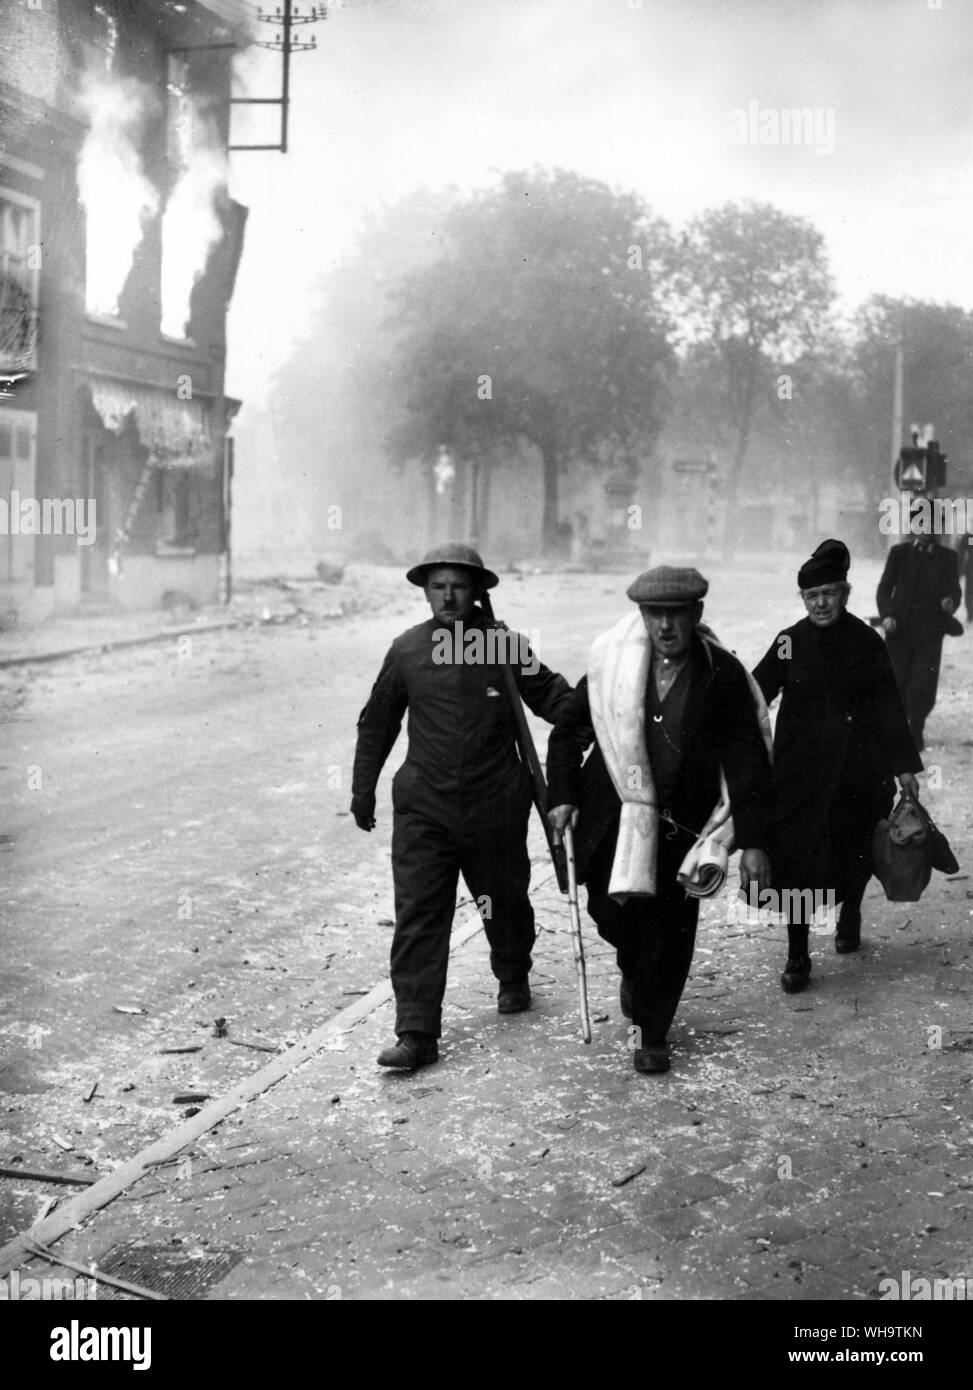 WW1/Francia: Un soldado aliado ayuda a los civiles fuera de edificios en llamas. Foto de stock